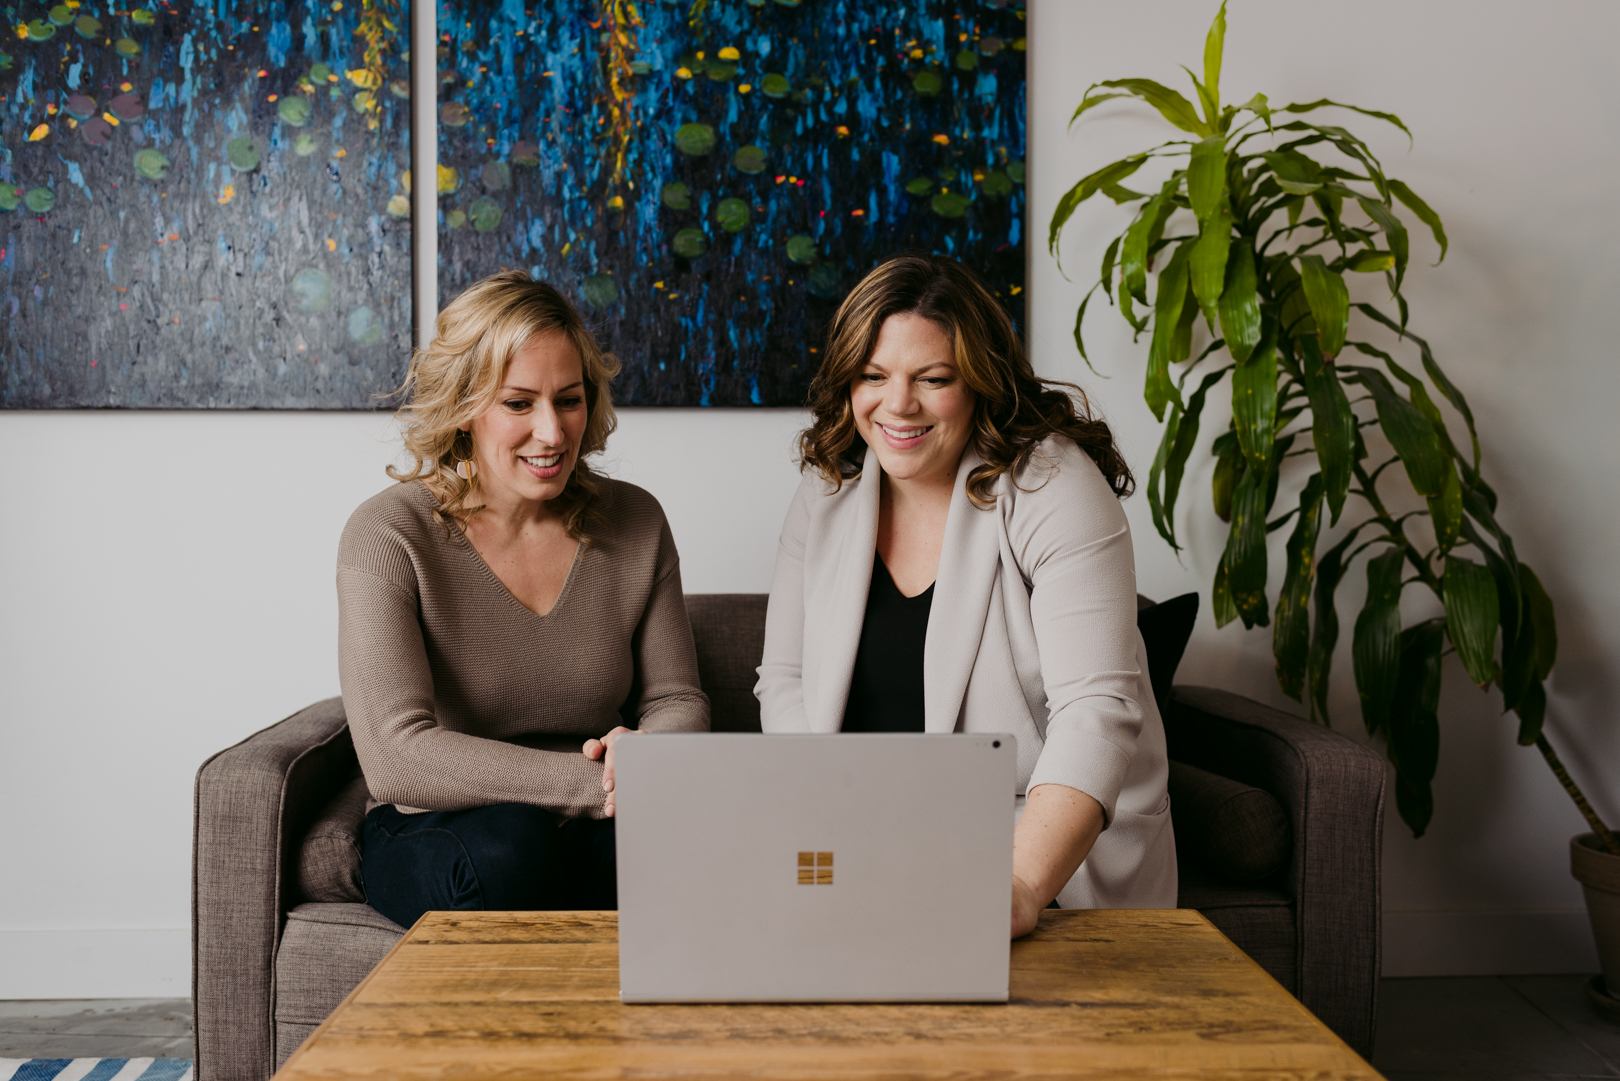 Daria Kark and Sarah Hunter working together at laptop